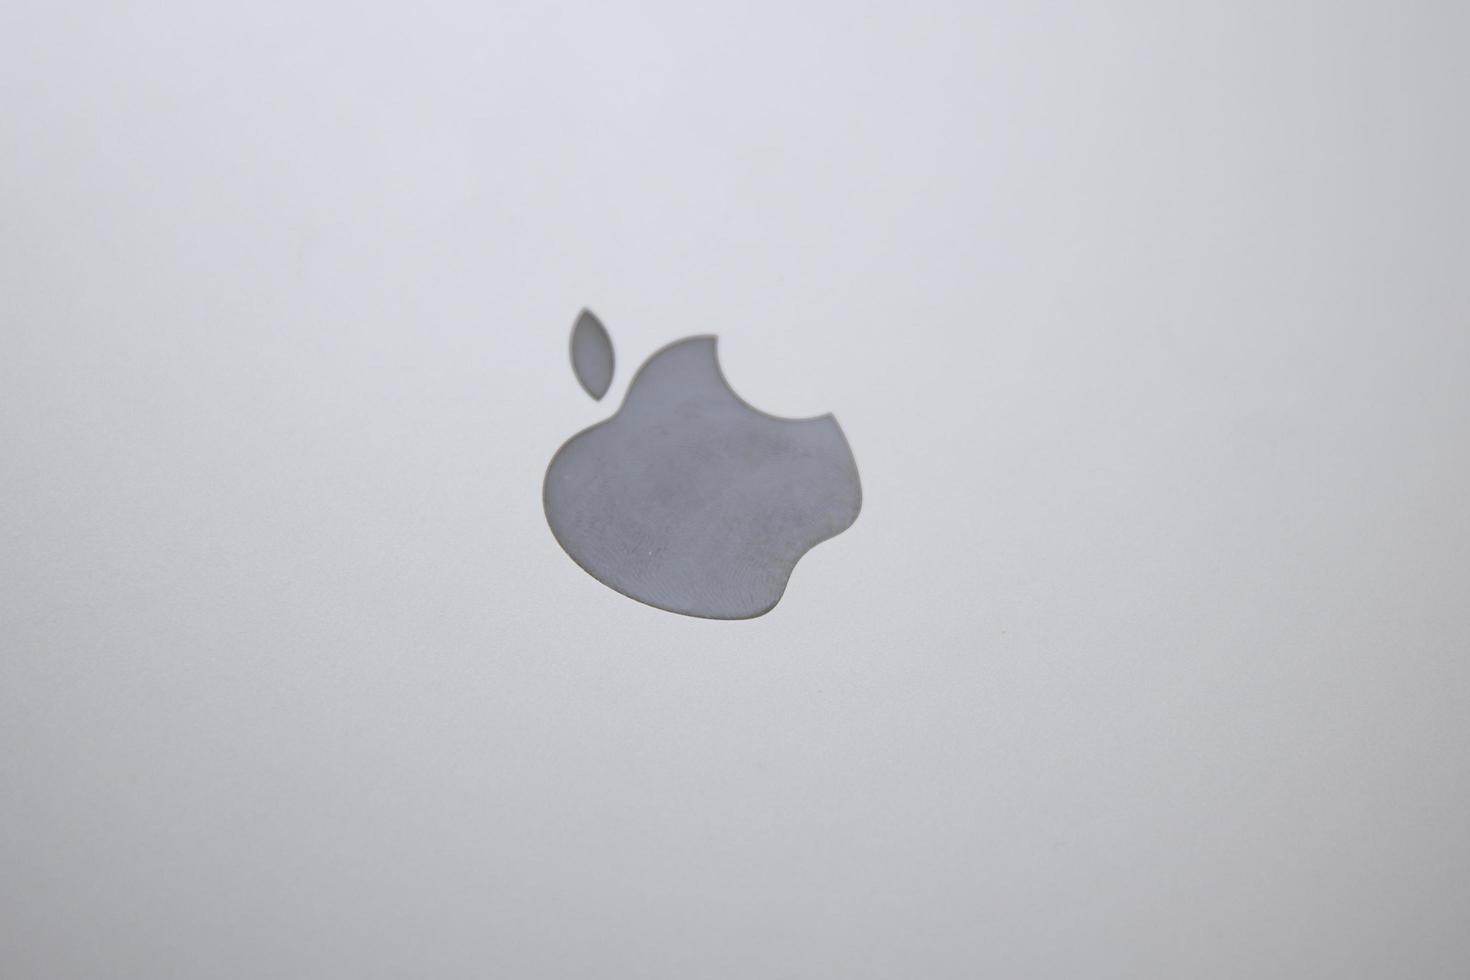 belgrado, serbia, 2020 - detalle de la computadora macbook. el macbook es una marca de ordenadores portátiles fabricados por apple inc. foto